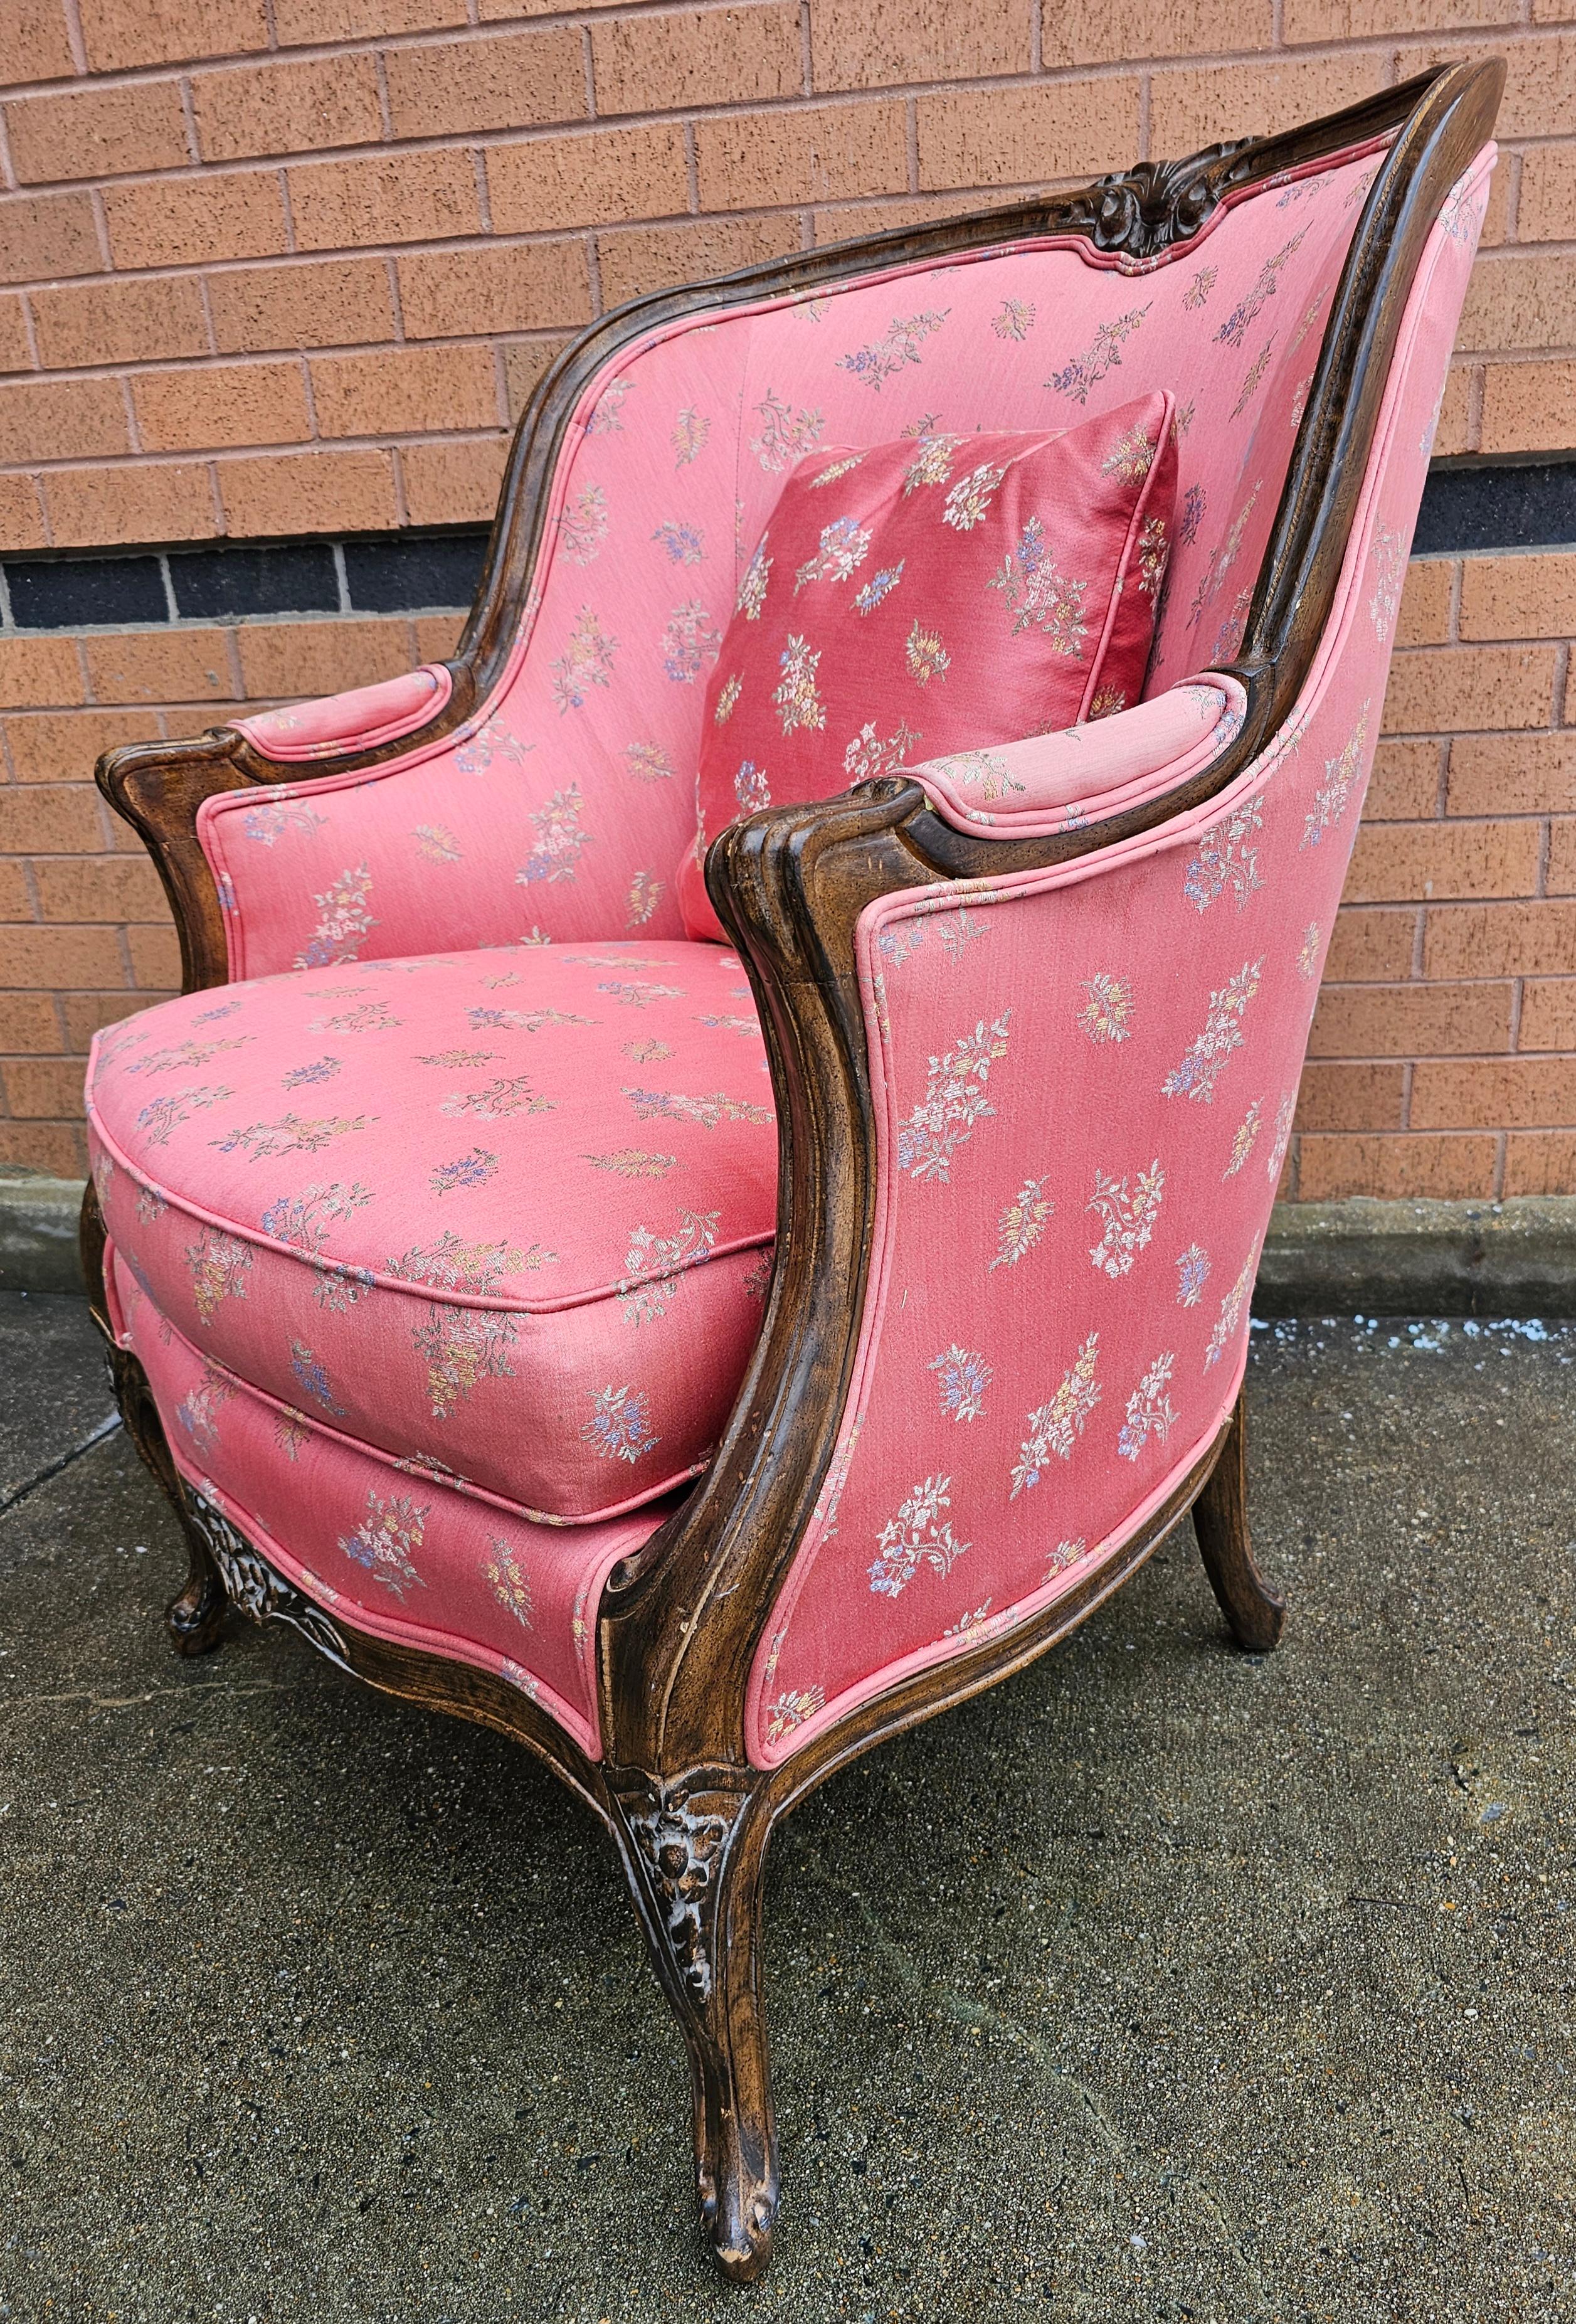 Eine viktorianische Stil geschnitzt Obstholz und gepolstert Lounge Chair in gutem Vintage-Zustand. Saubere Polsterung Maße 29